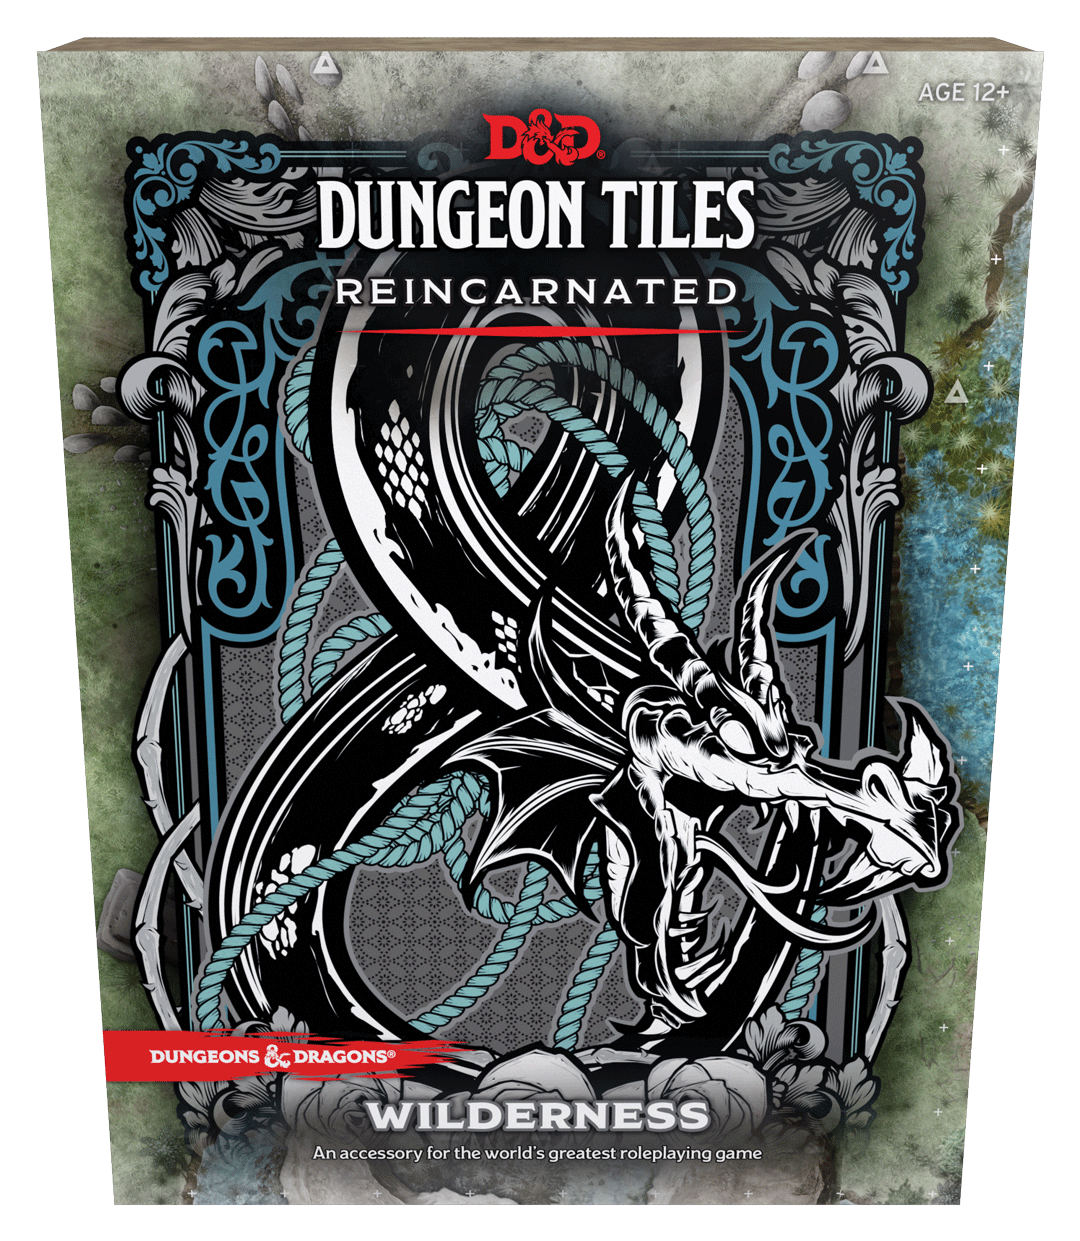 D&amp;D Dungeon Tiles Reincarnated - Wilderness